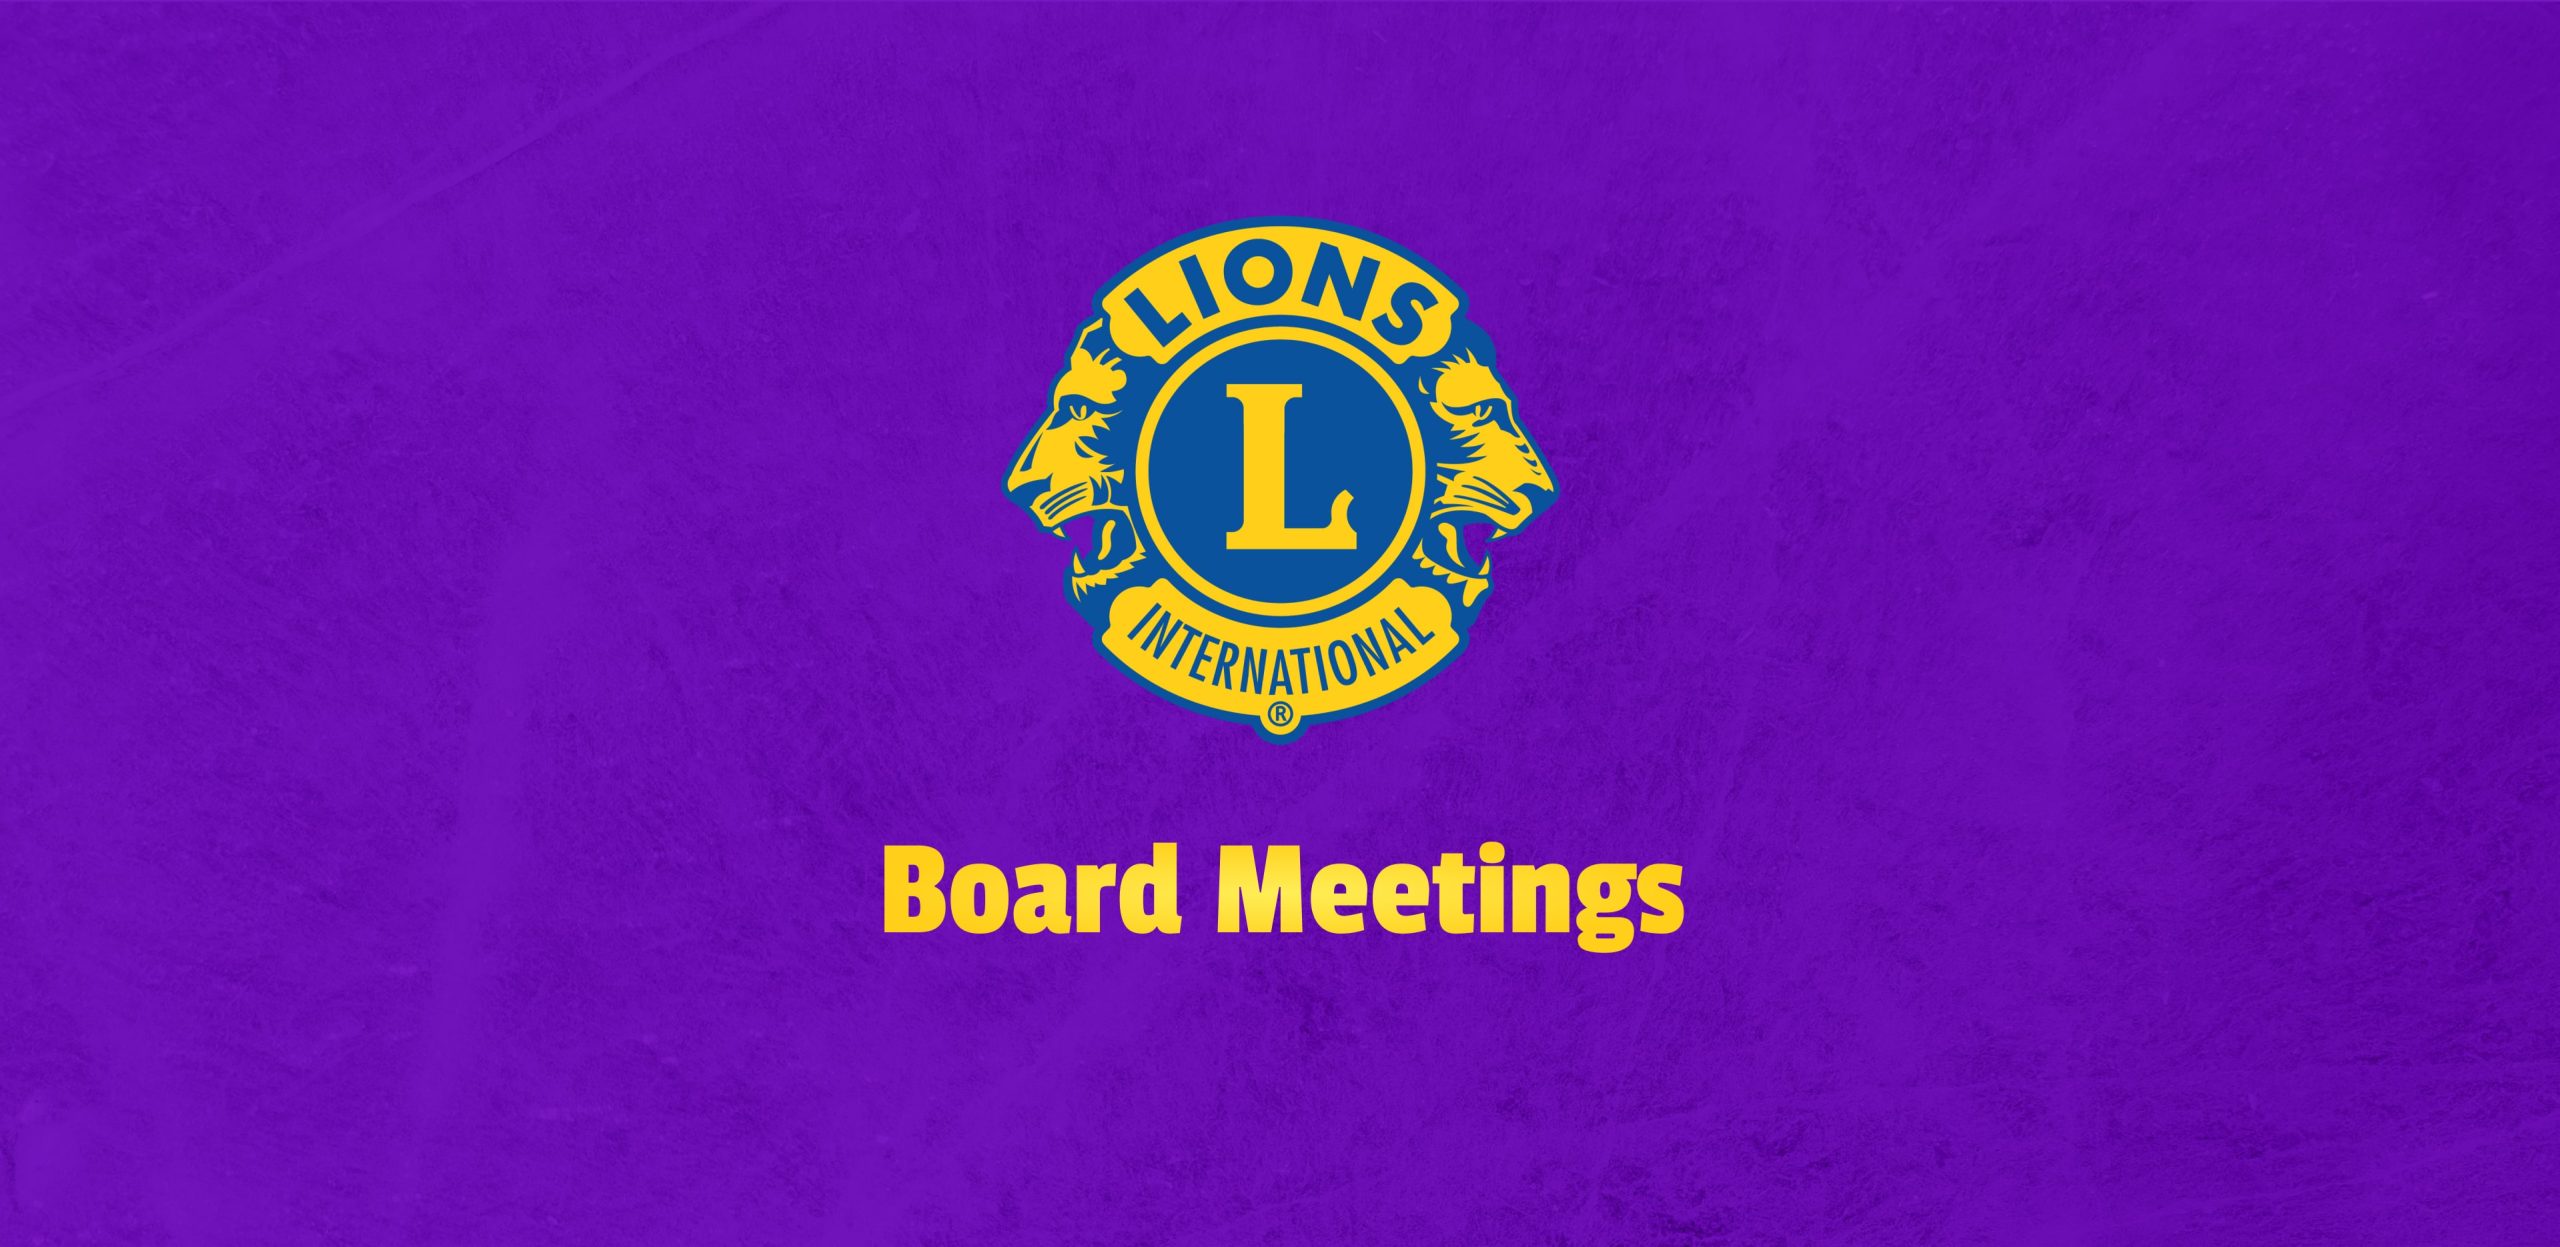 Bel Air Lions Club Board Meeting